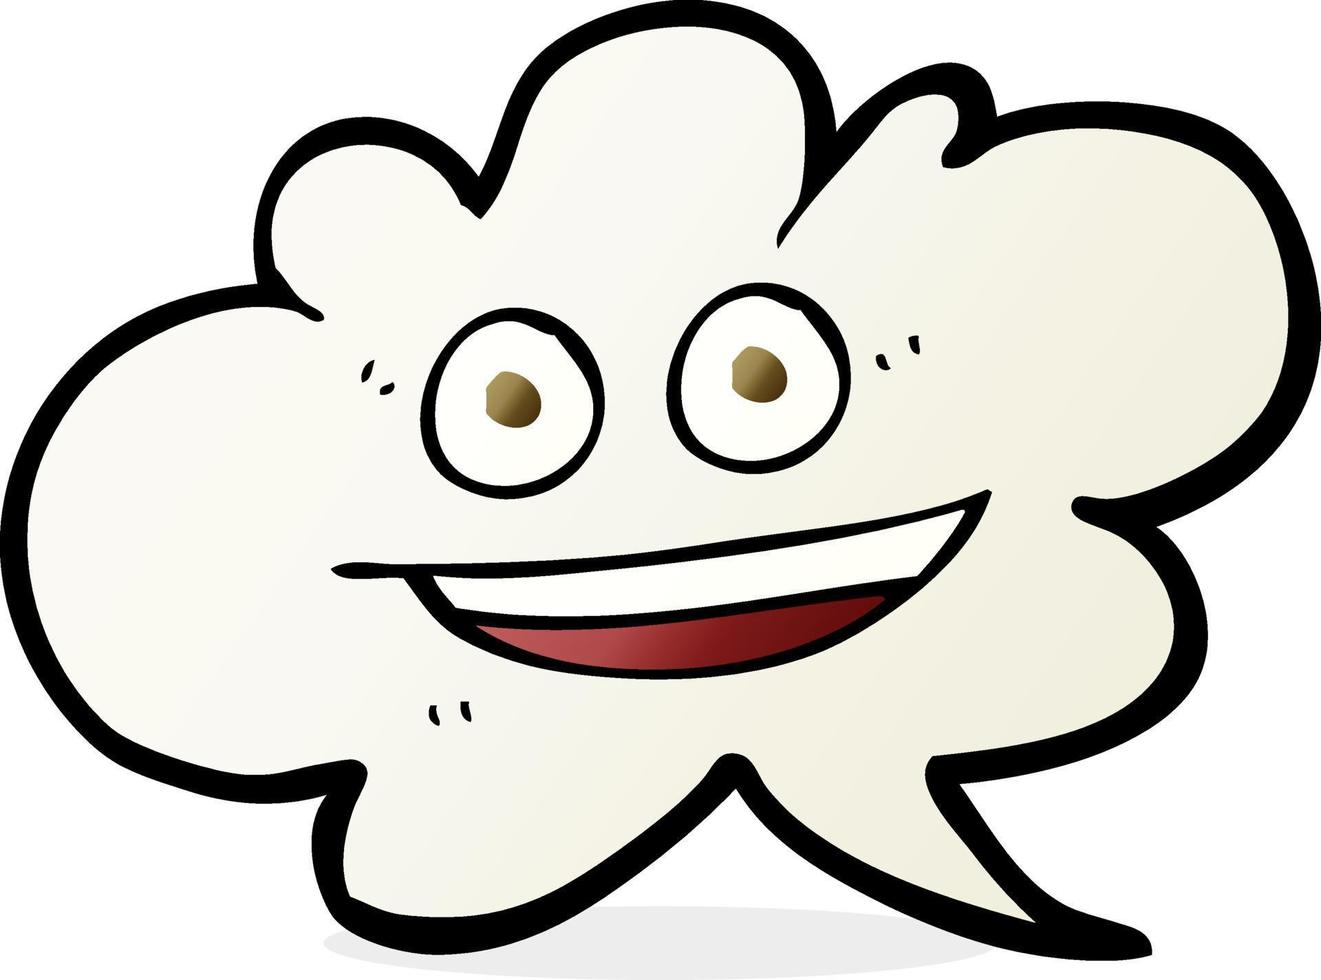 Bulle de dialogue nuage cartoon dessiné à main levée avec le visage vecteur